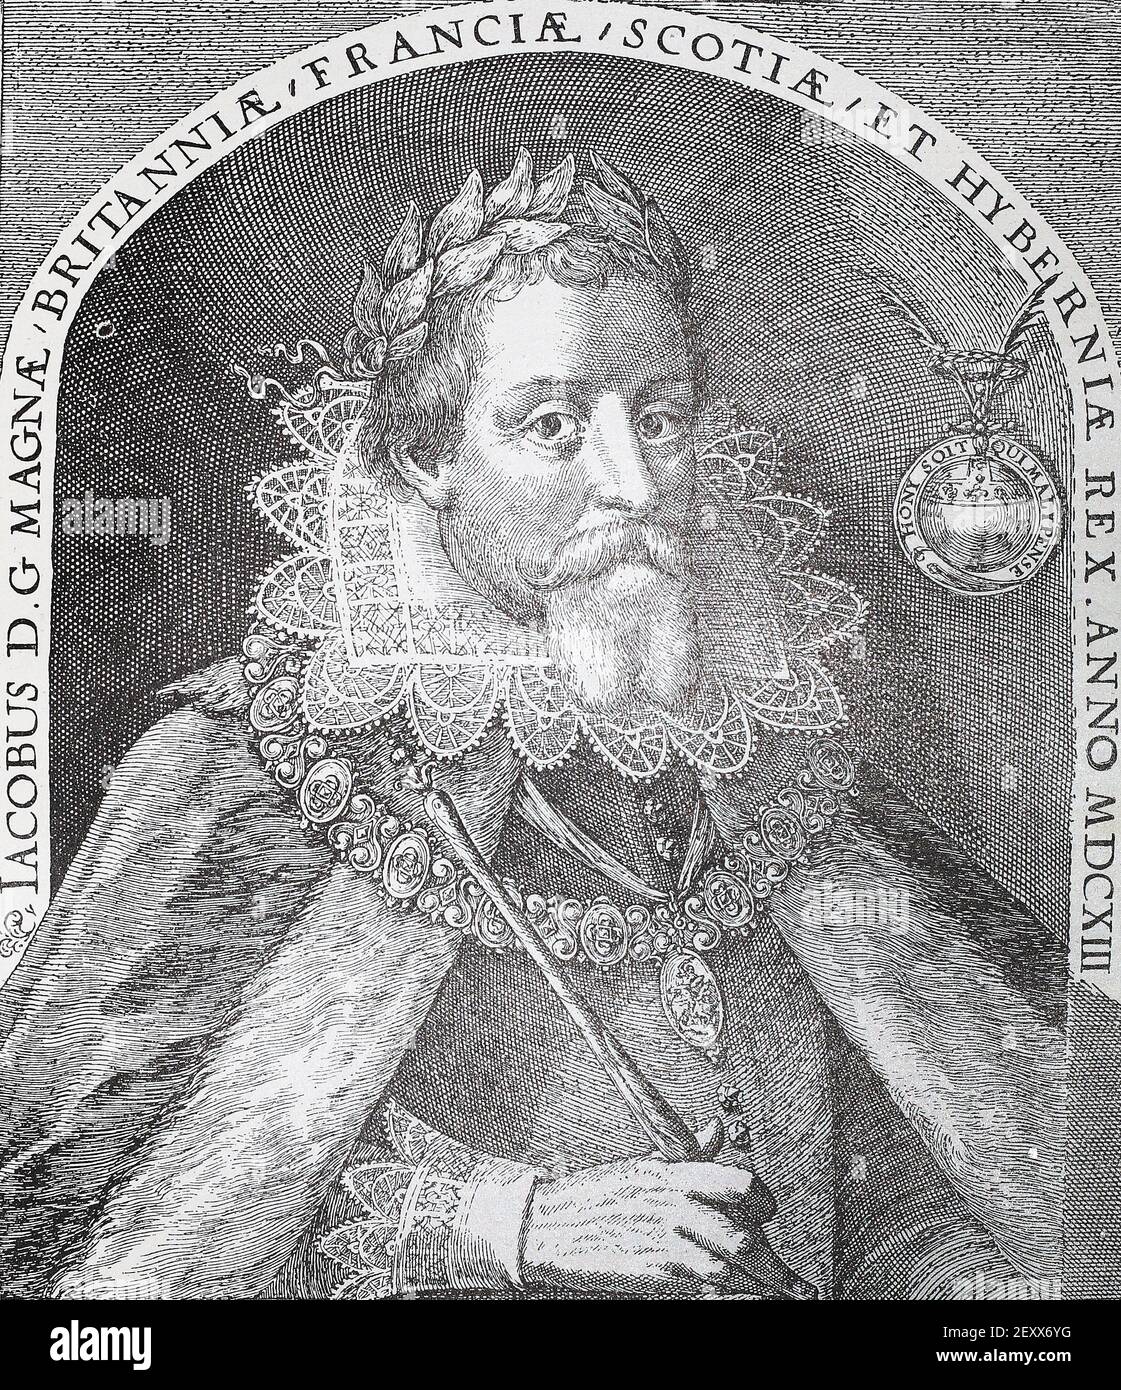 Englischer König James I. mittelalterliche Gravur. James I. (1566 - 1625), König von Schottland (als James VI.) von 1567 bis 1625 und erster Stuart König von England von 1603 bis 1625, der sich selbst zum „König von Großbritannien“ ernannte. James war ein starker Verfechter des königlichen Absolutismus, und seine Konflikte mit einem zunehmend selbstbewußter Parlament die Bühne für die Rebellion gegen seinen Nachfolger, Charles I. Stockfoto